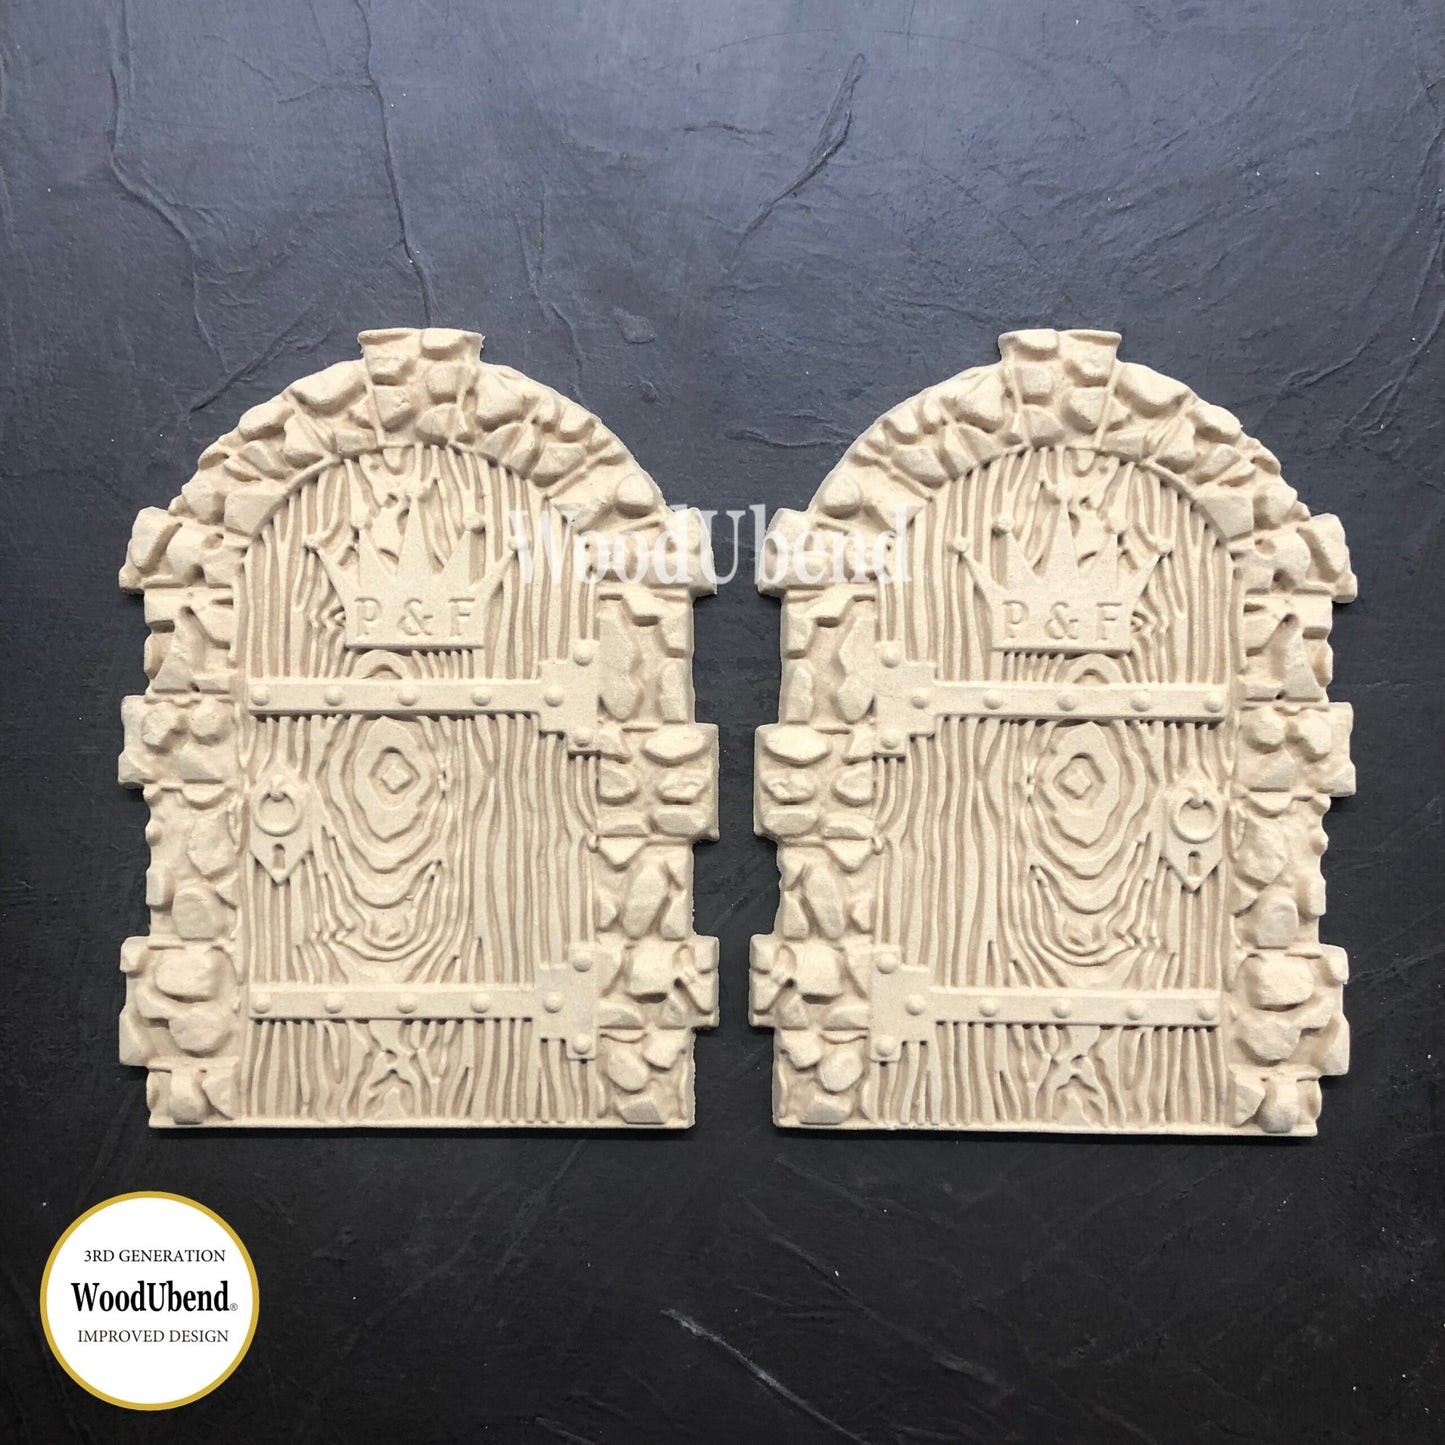 Wood U Bend Set of 2 Medieval Doors WUB2279 (7 x 5.2 in)